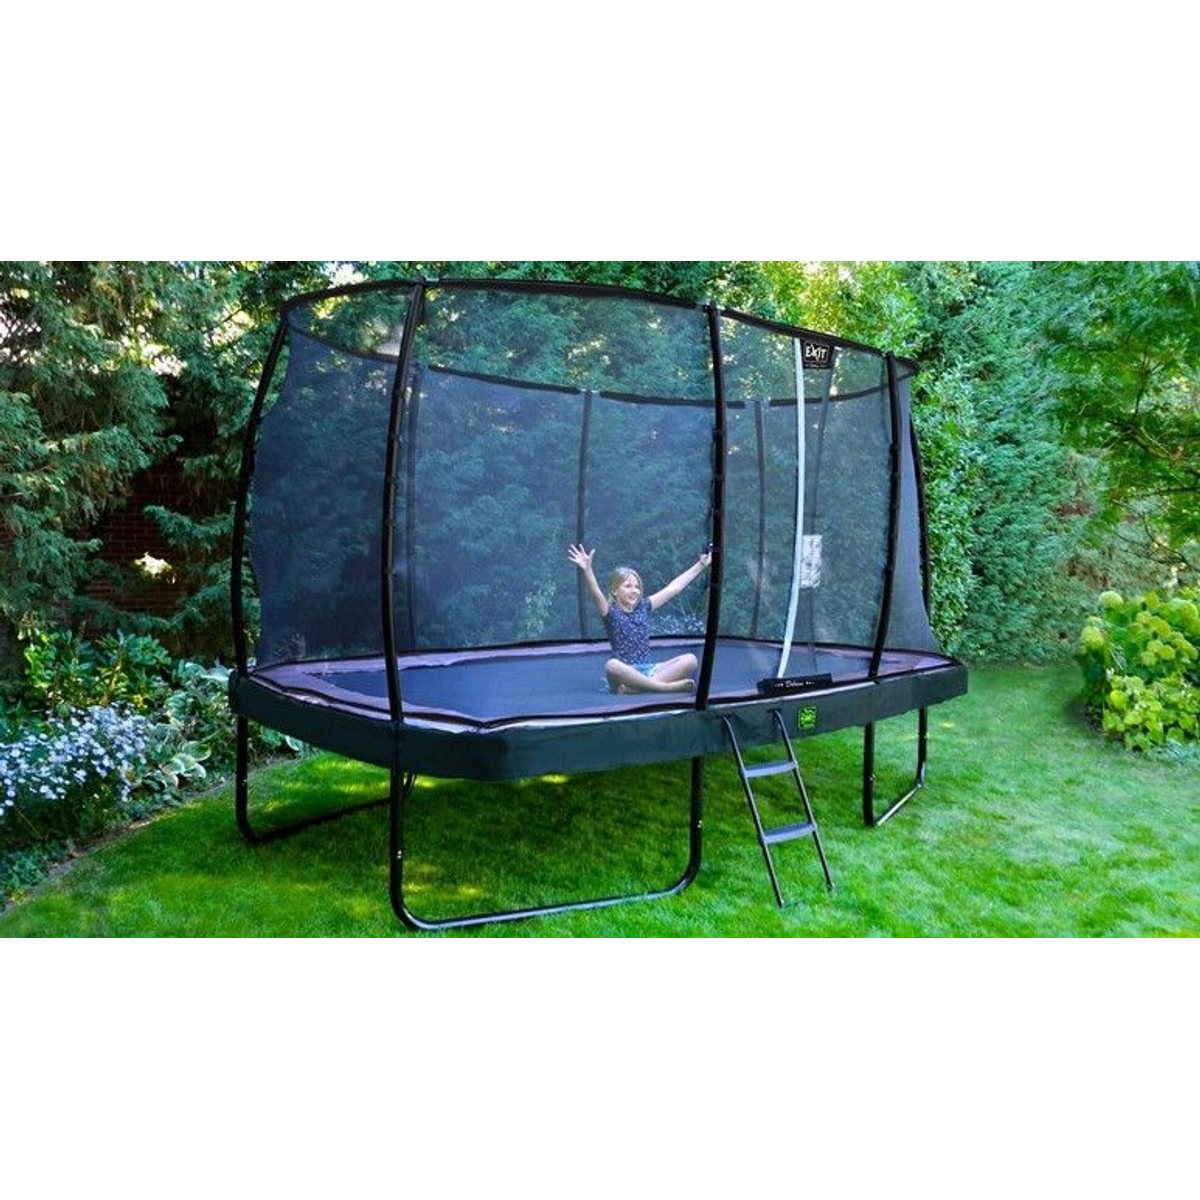 EXIT Elegant trampoline 244x427cm met Economy veiligheidsnet - zwart